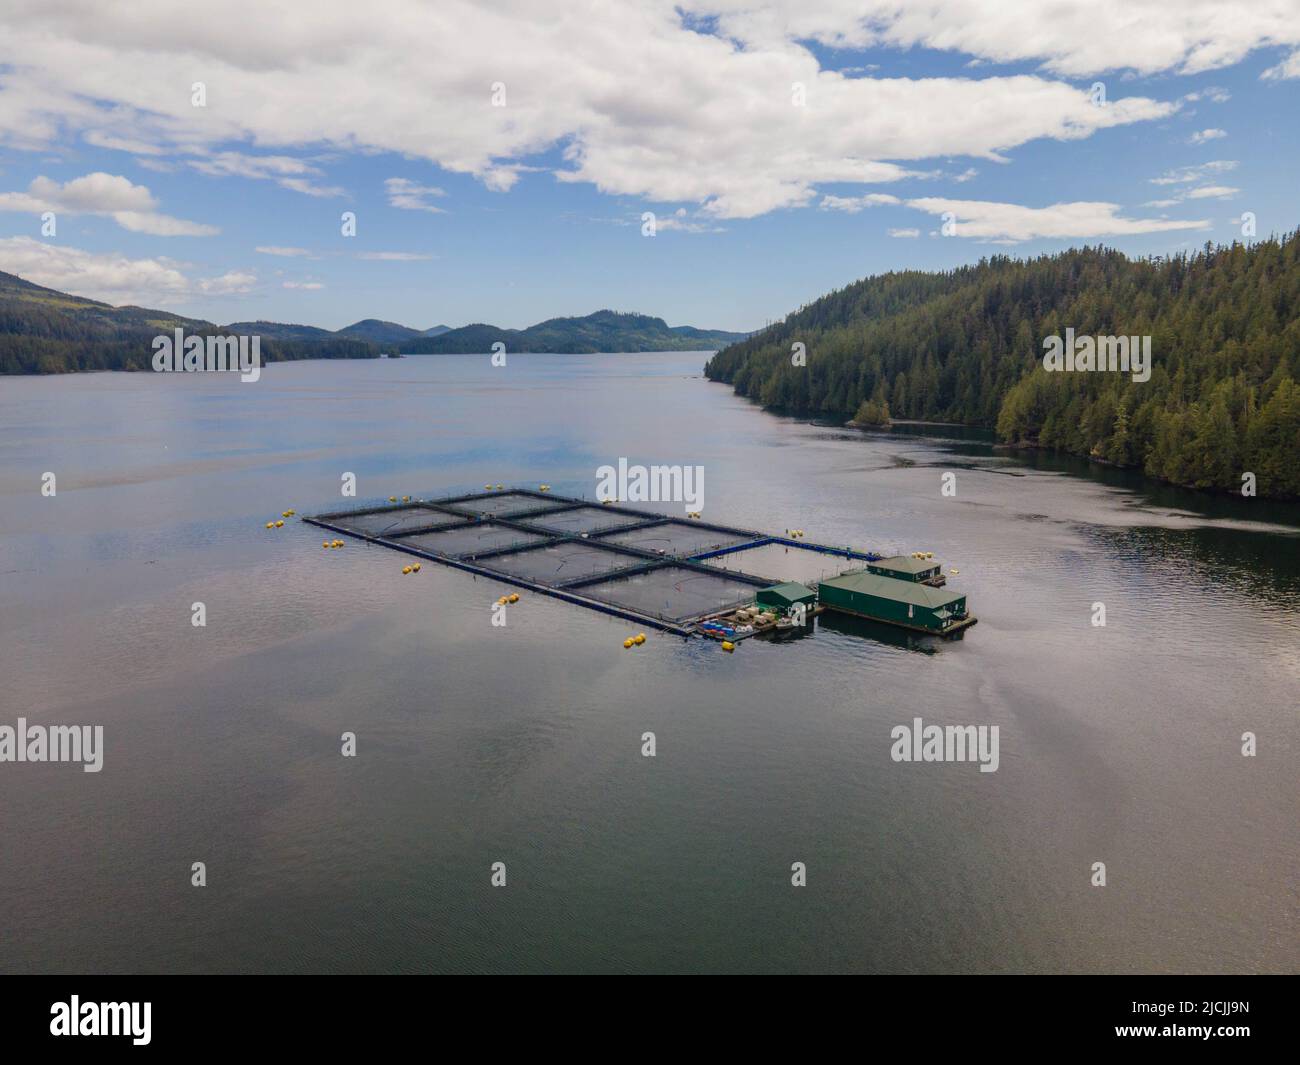 Salmon farm in Clayoquot sound, British Columbia, Canada. Stock Photo